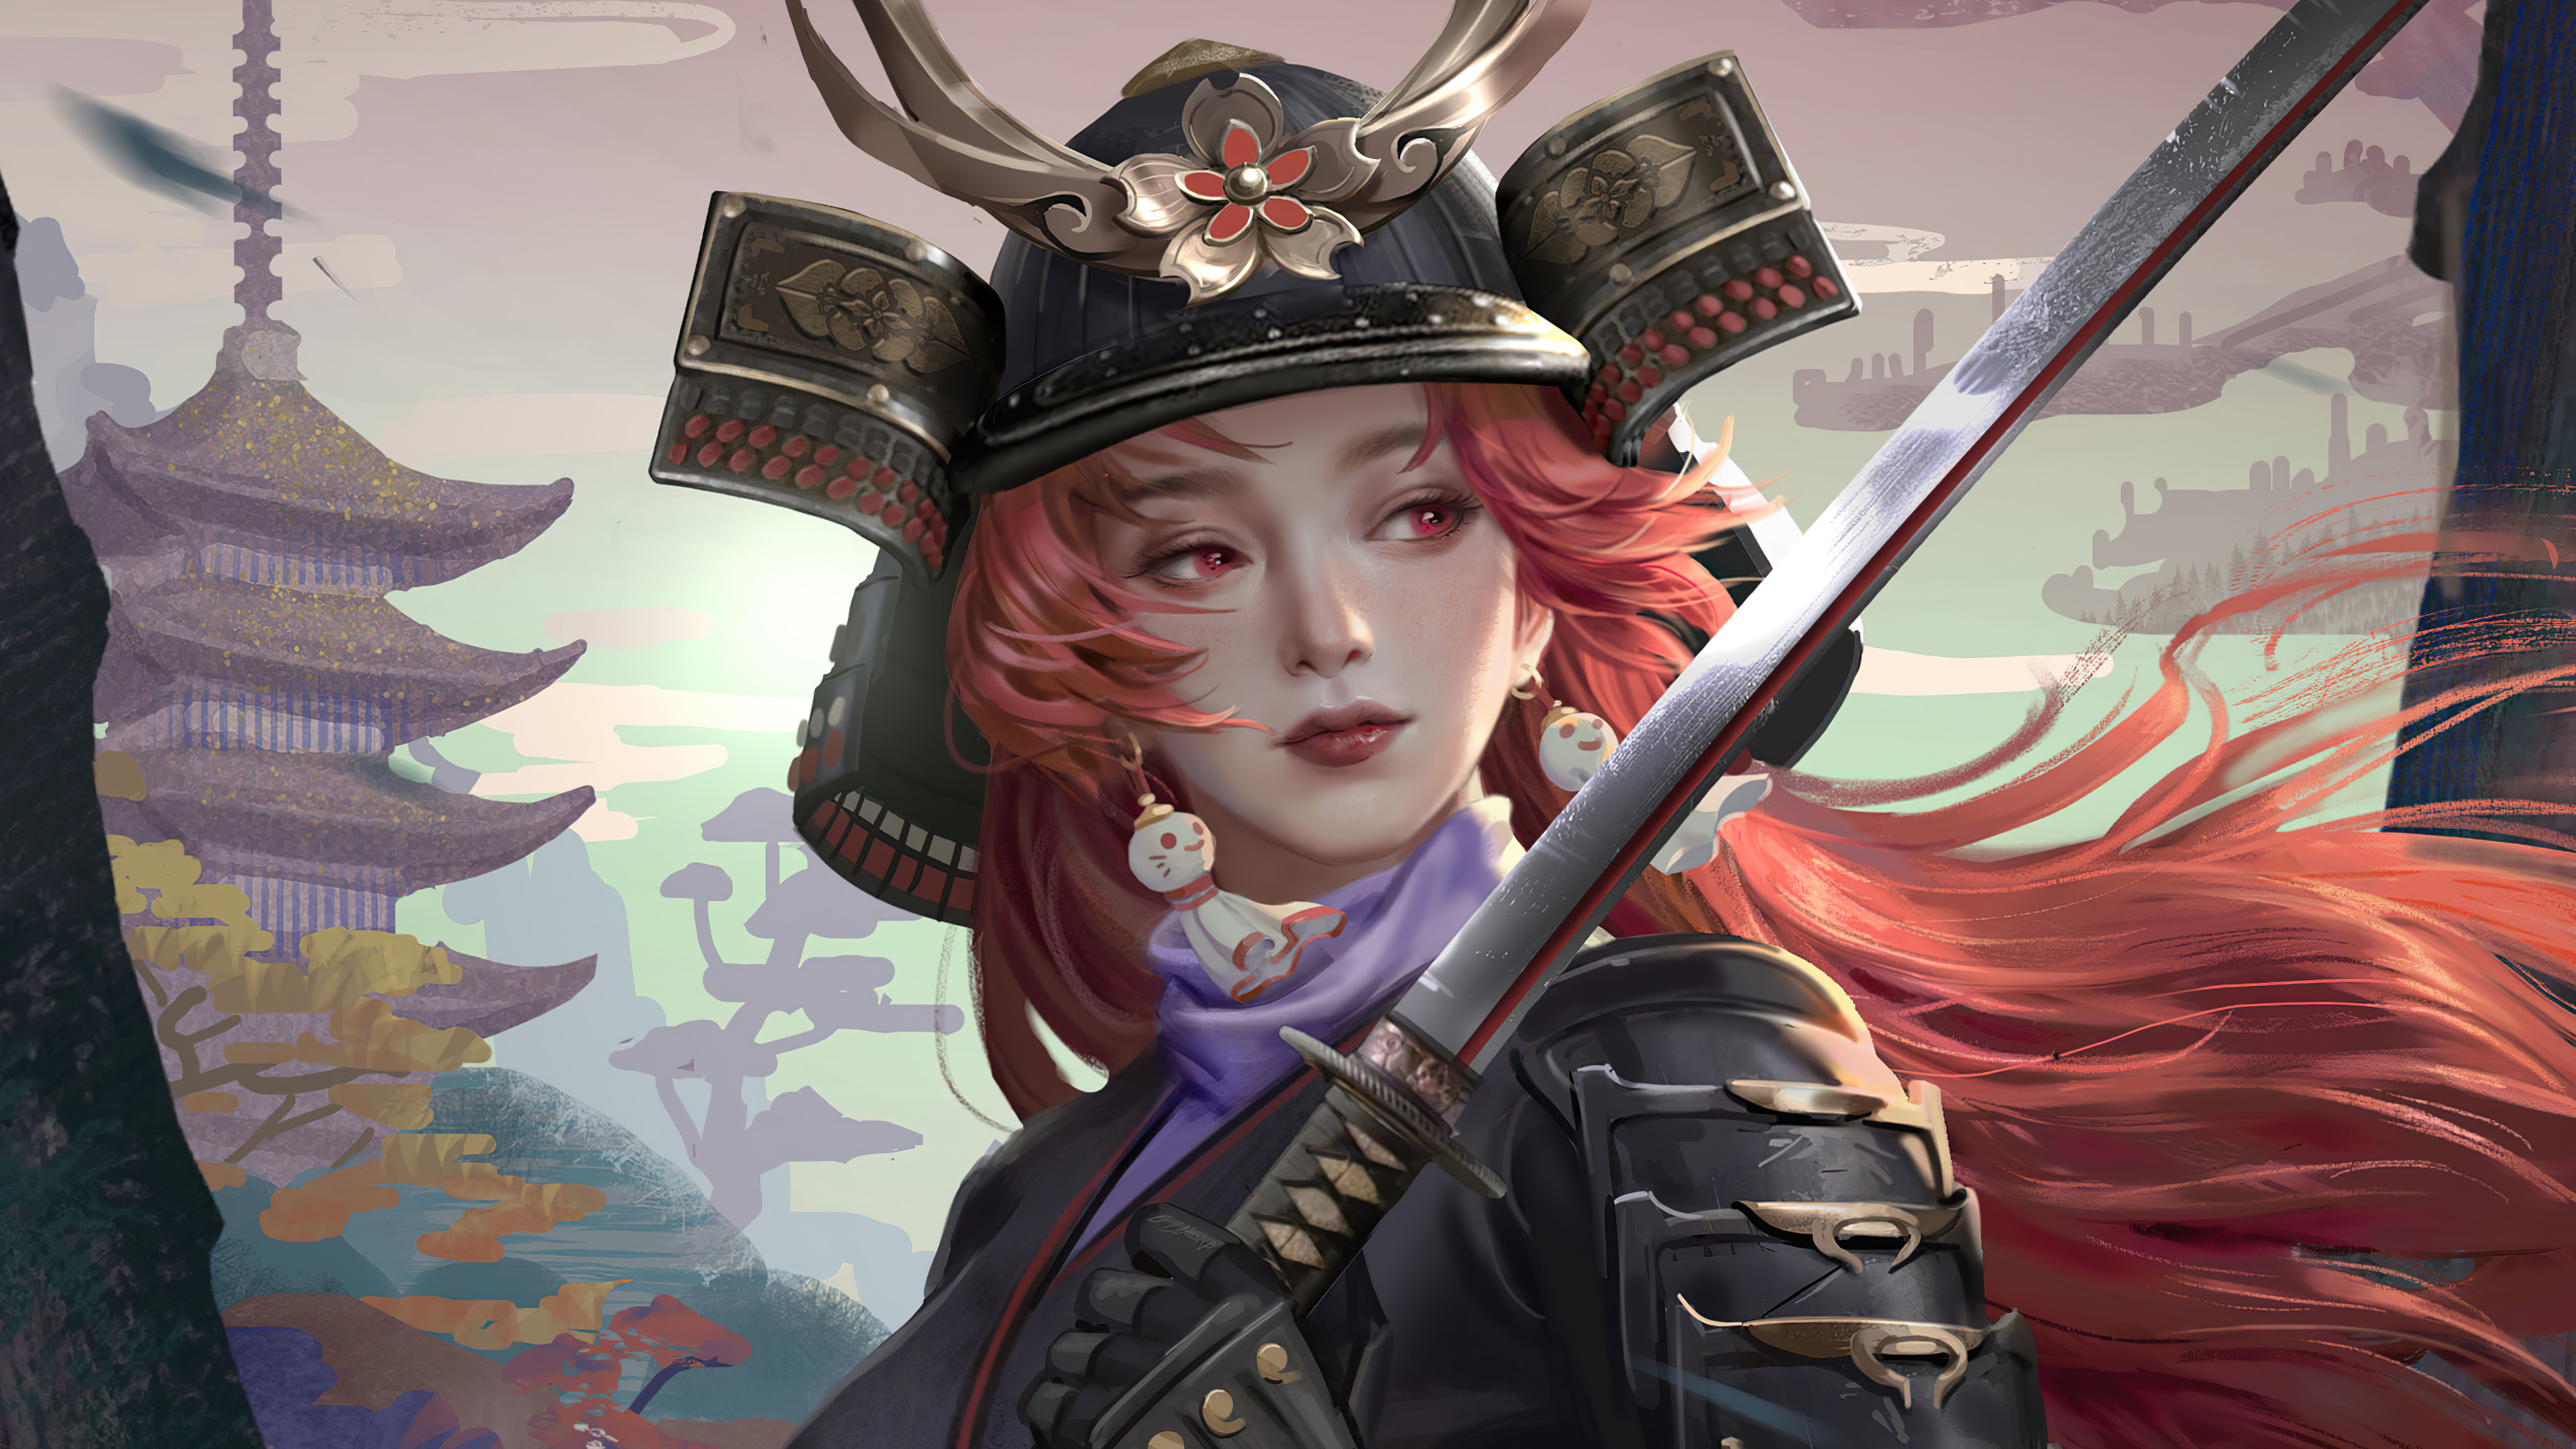 Download mobile wallpaper Fantasy, Helmet, Samurai, Katana, Women Warrior for free.